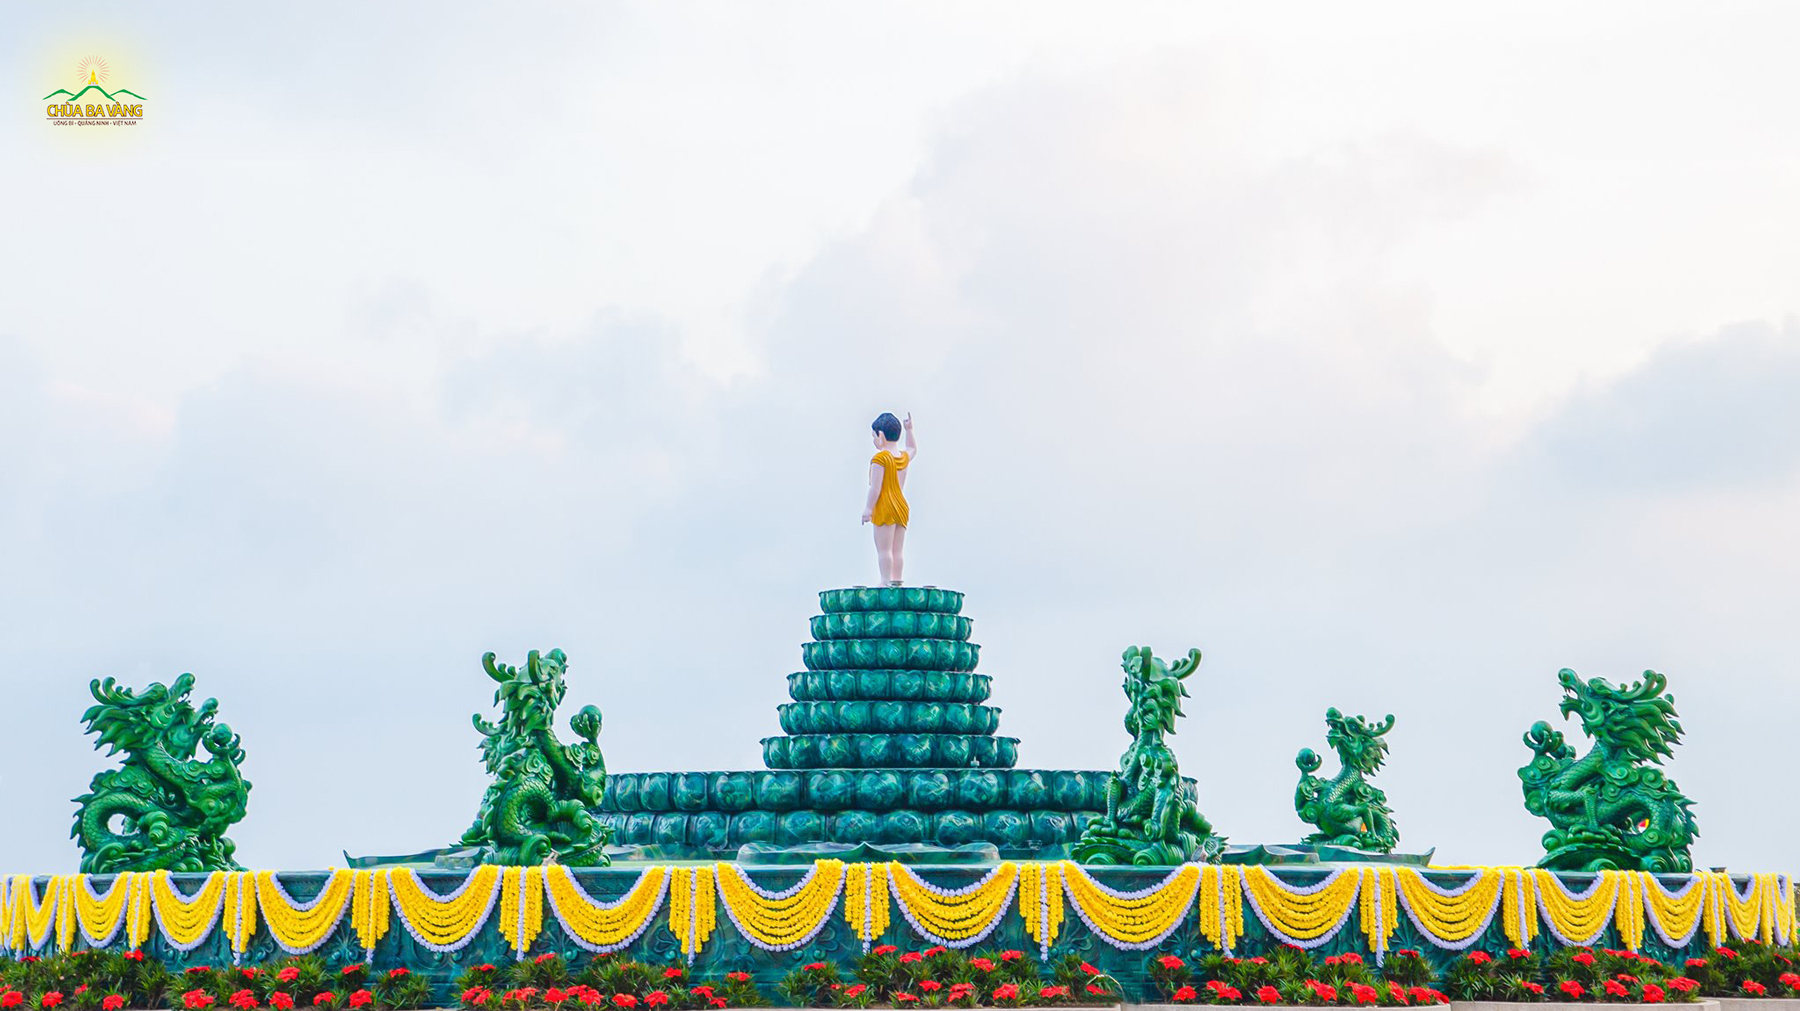 Tại chùa Ba Vàng, các công tác chuẩn bị được hoàn thiện những bước cuối cùng để đón mừng Tết Phật đản